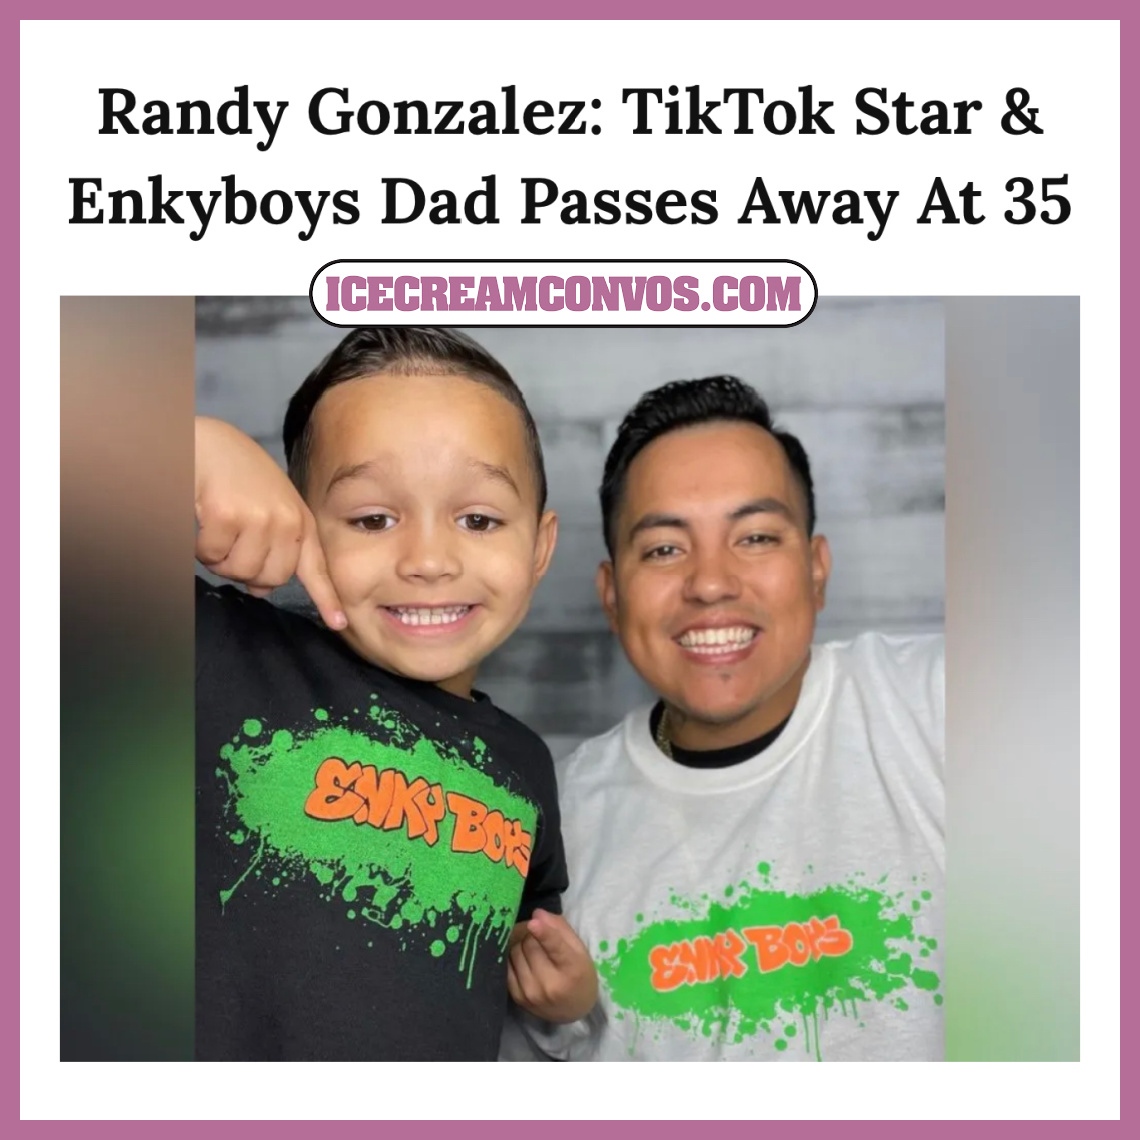 TikTok star Randy Gonzalez, 35